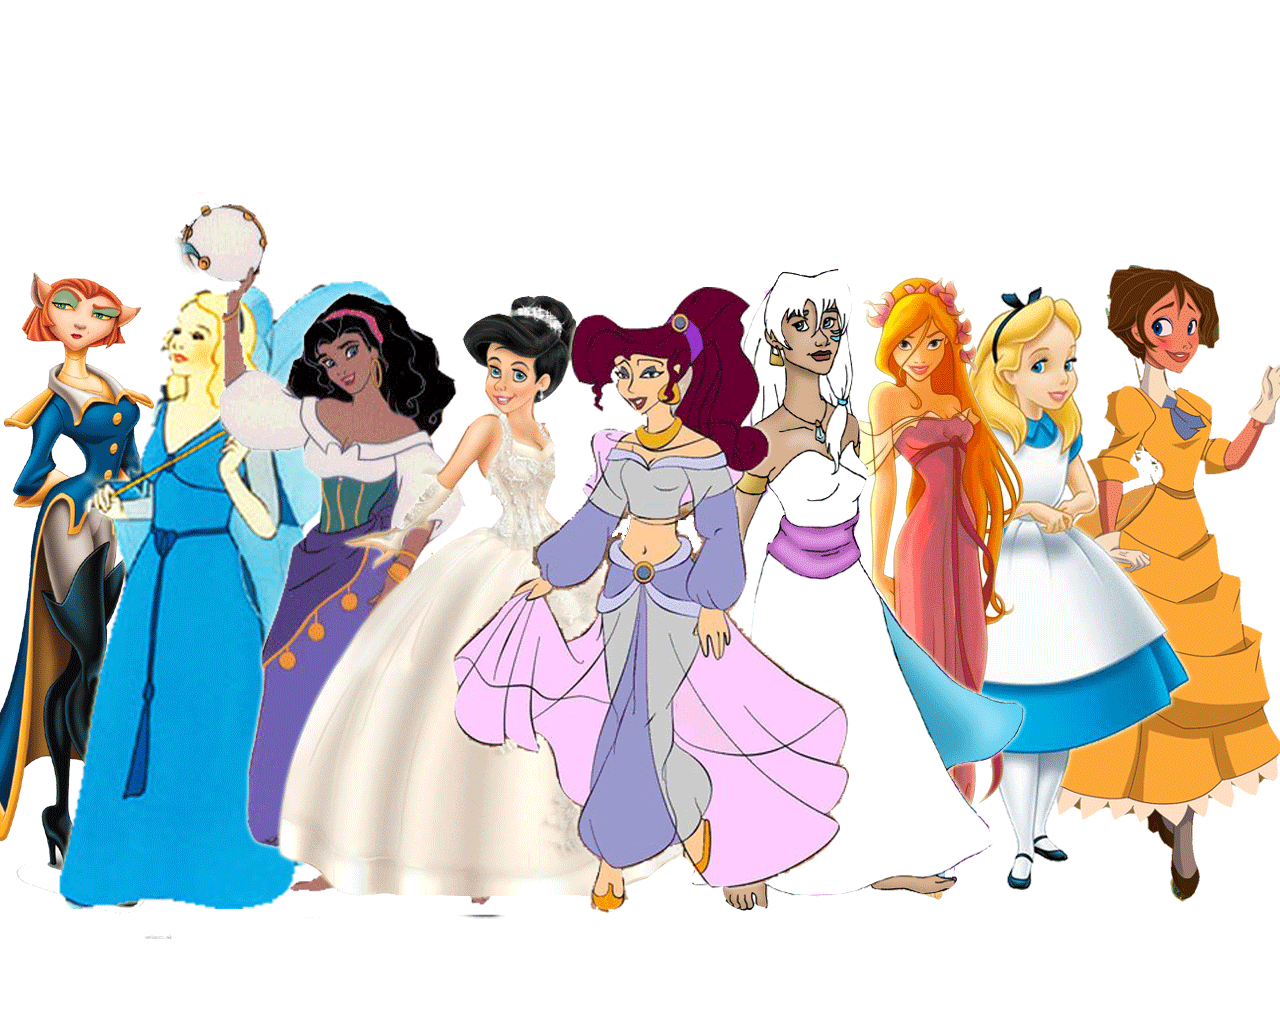 Royal Disney Girls picture, Royal Disney Girls image, Royal Disney Girls wallpaper